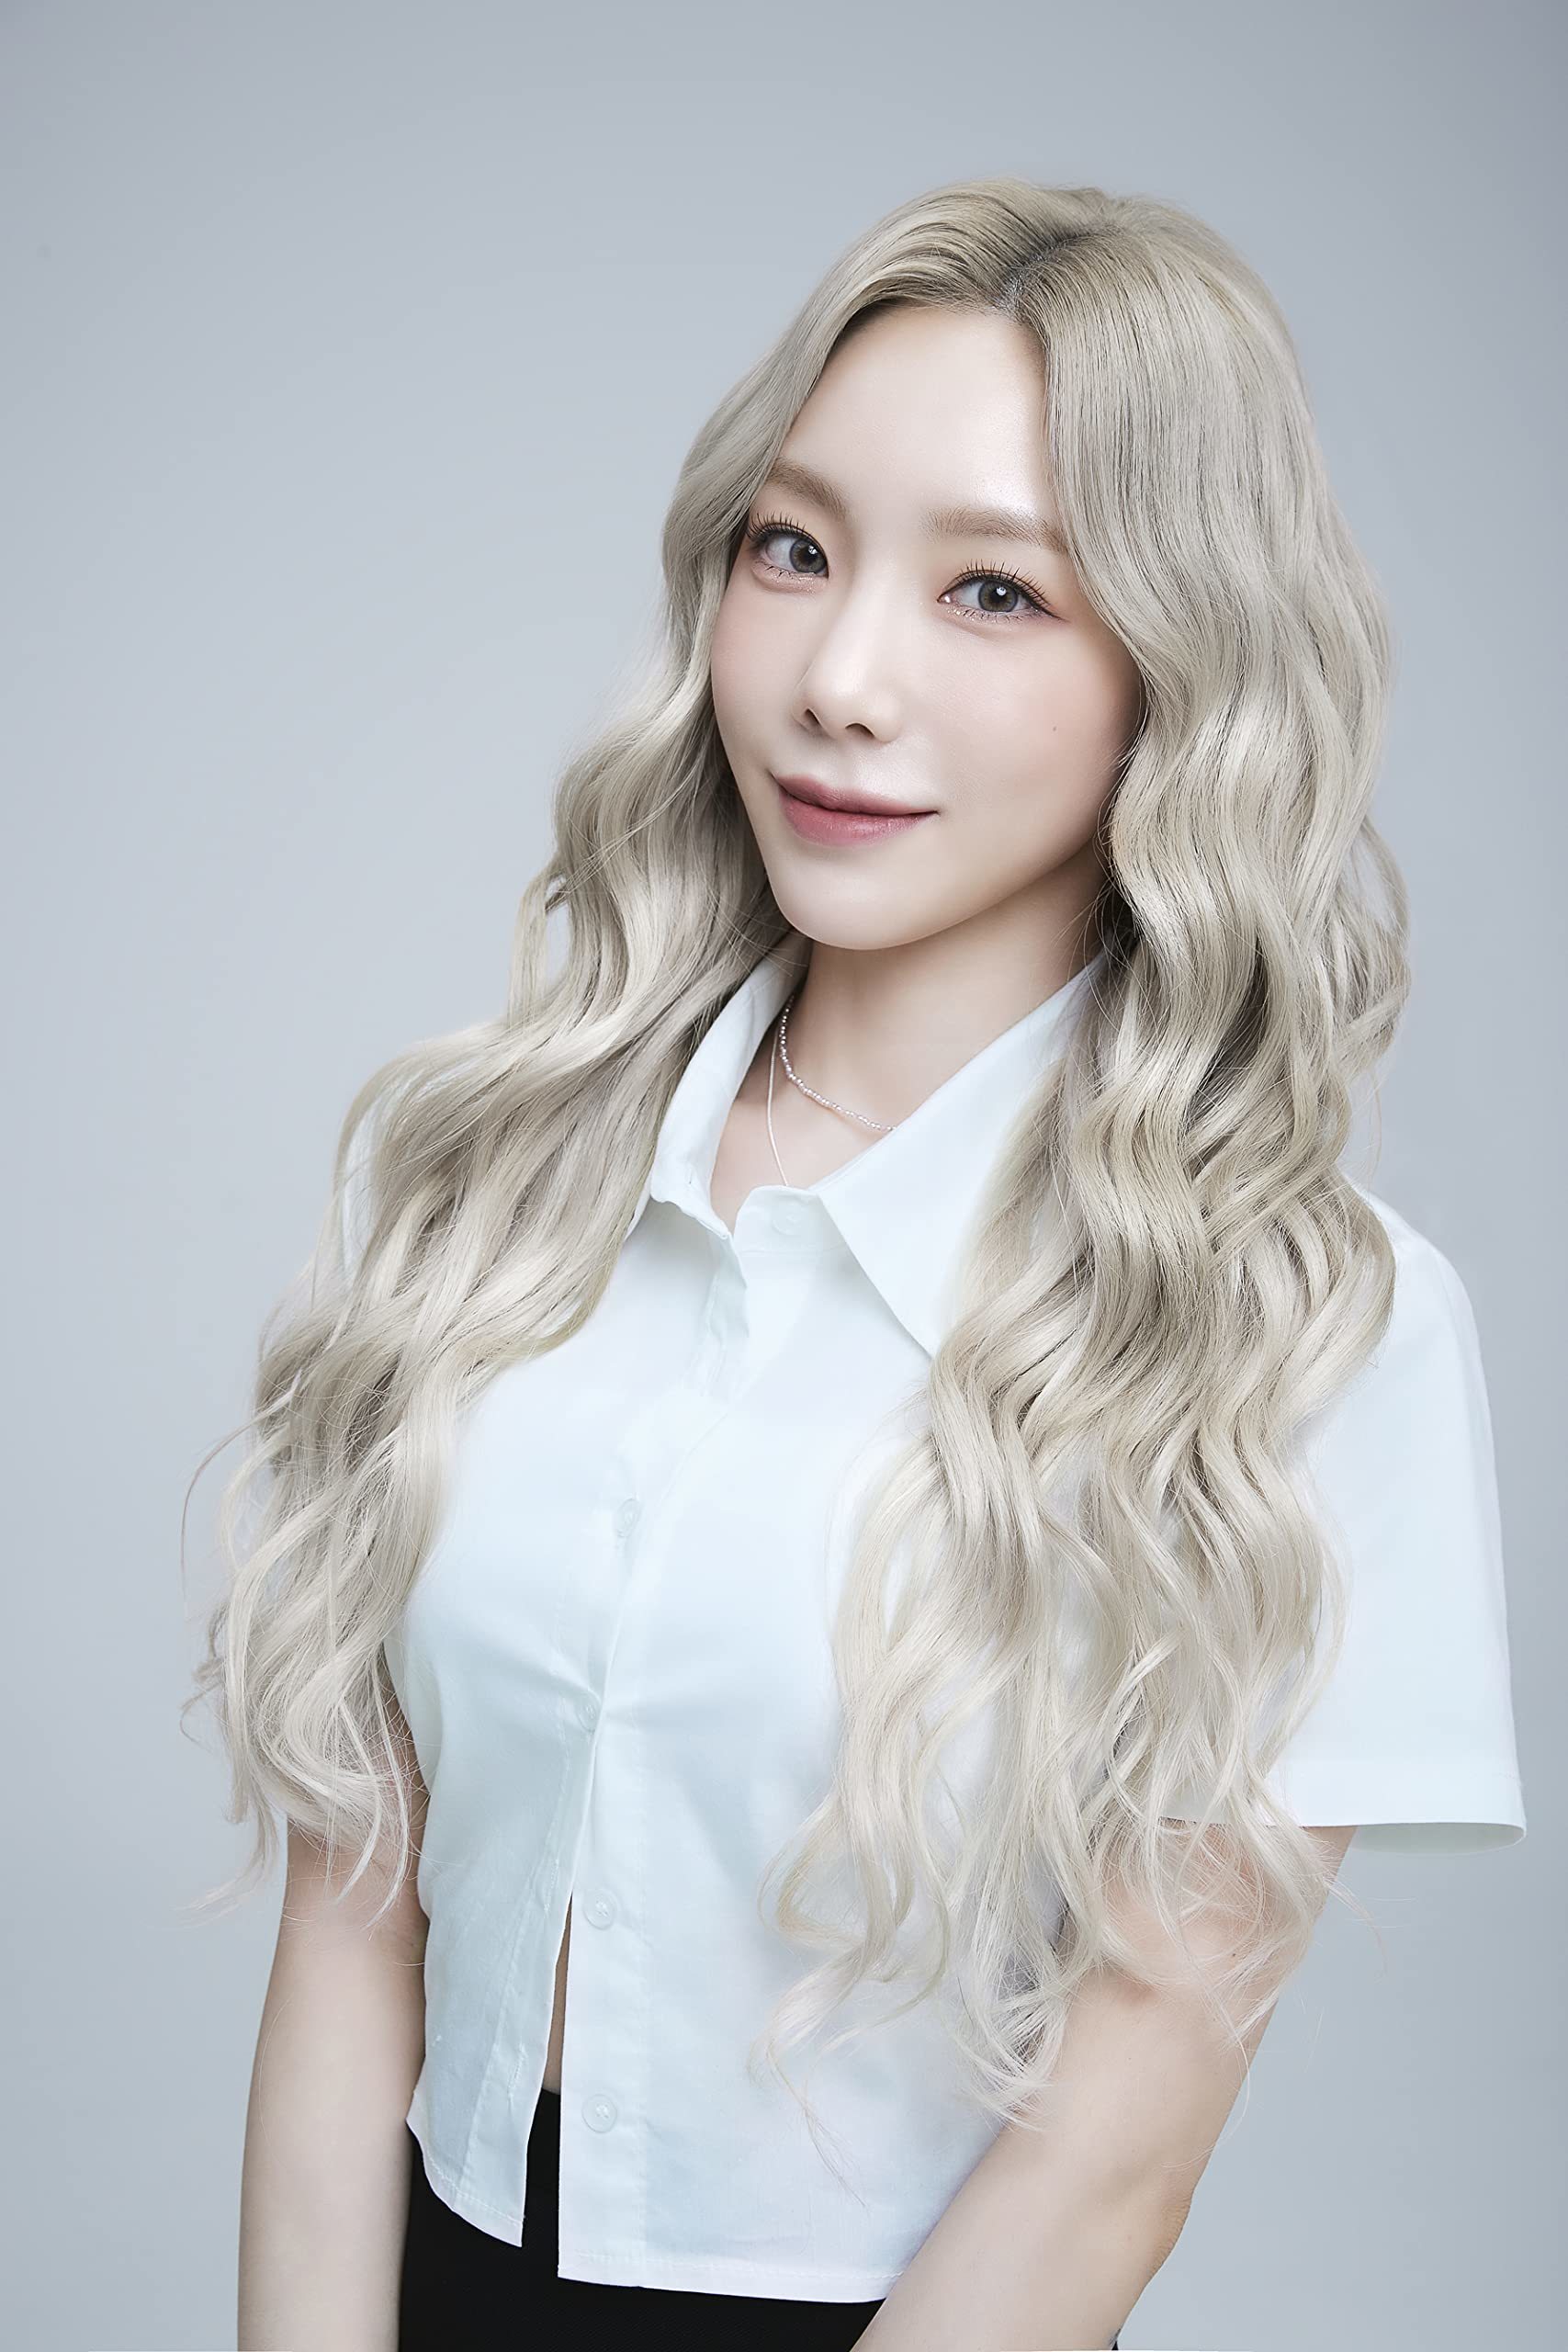 People 1707x2560 K-pop Kim Taeyeon Korean women model singer blonde dyed hair contact lenses Asian